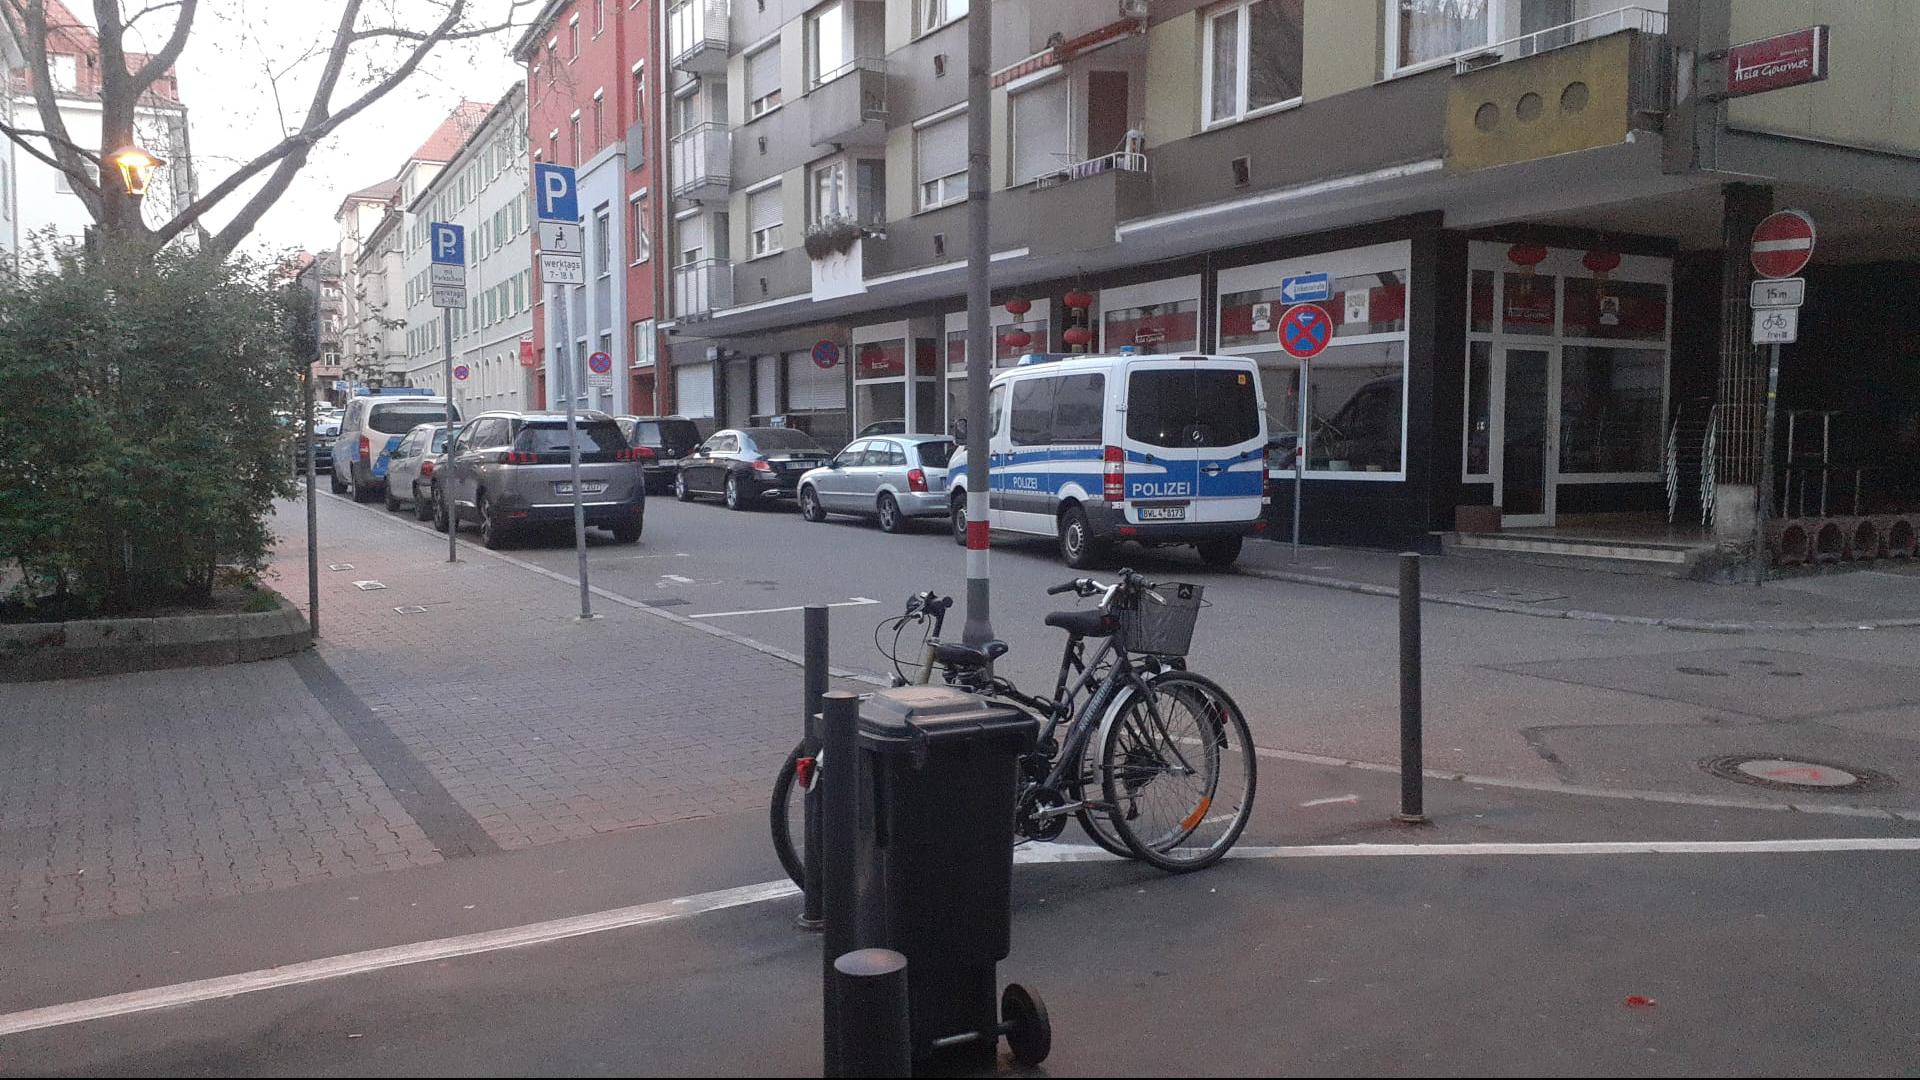 Einsatz in der Früh: Polizisten durchsuchten heute in Pforzheim mehrere Gebäude. Die Polizei bestätigte, dass es ein Festnahme gab